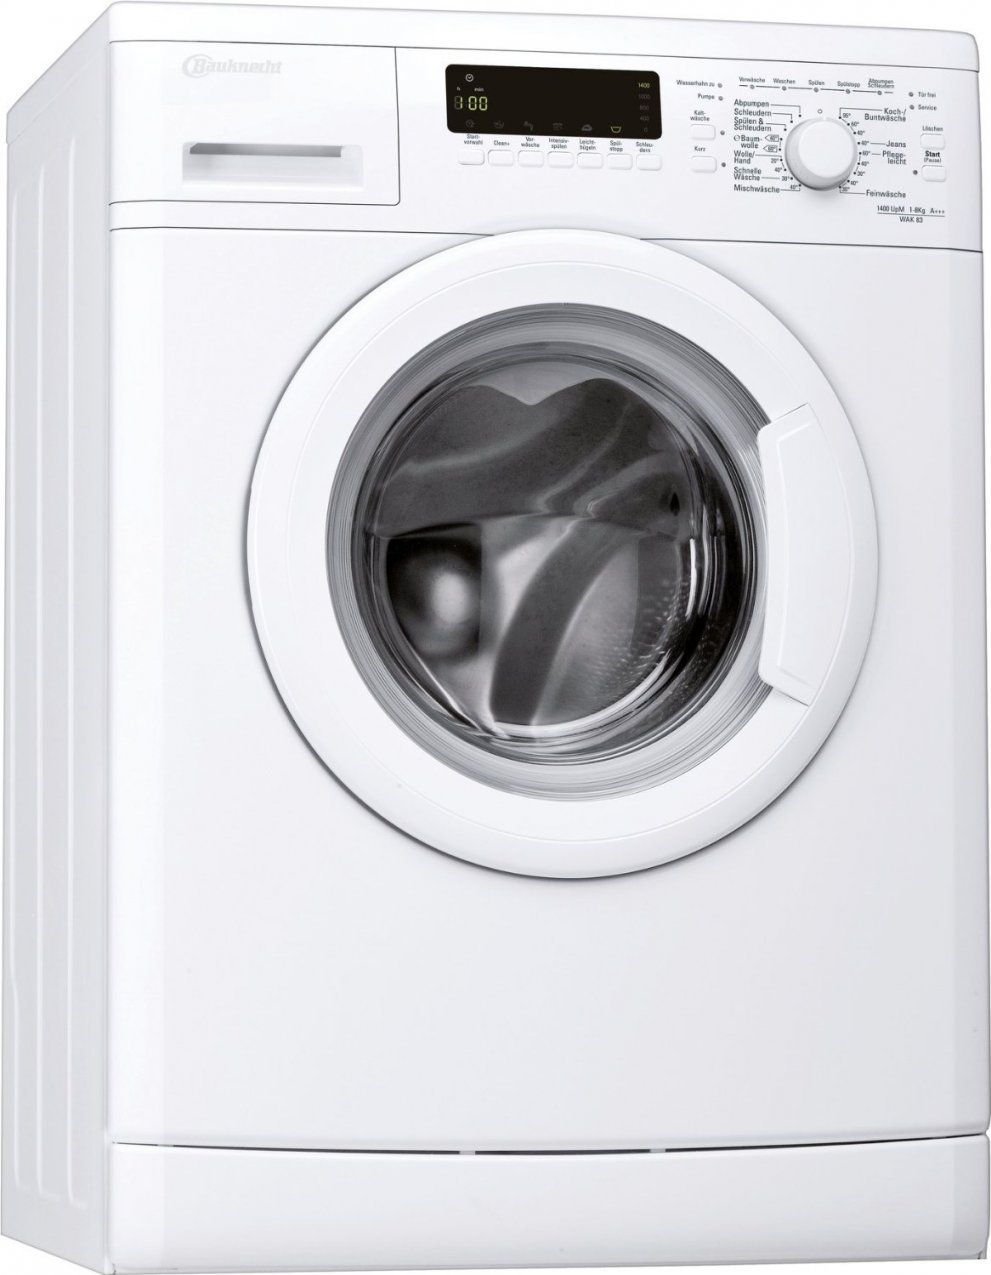 Bauknecht Wak83 Test  Waschmaschine Mit 8 Kg Fassungsvermögen von Beko Wmb 71443 Pte Stiftung Warentest Bild